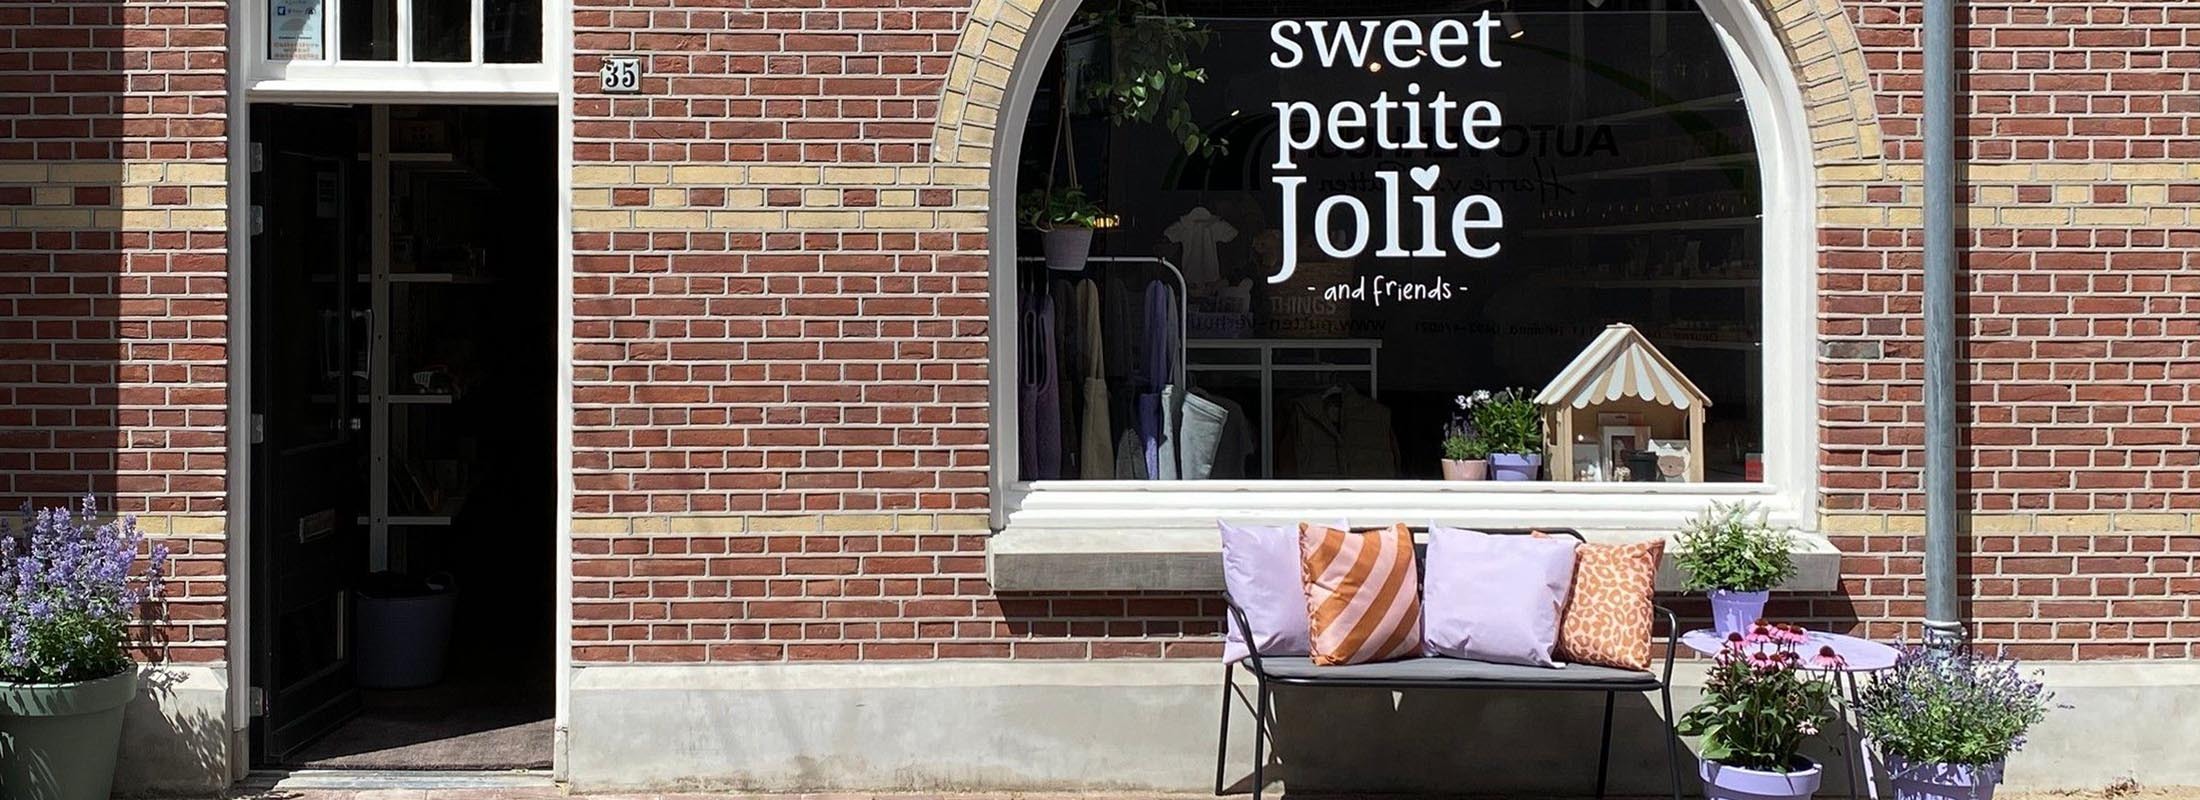 Sweet Petite Jolie & friends: de leukste kinderwinkel in Helmond!